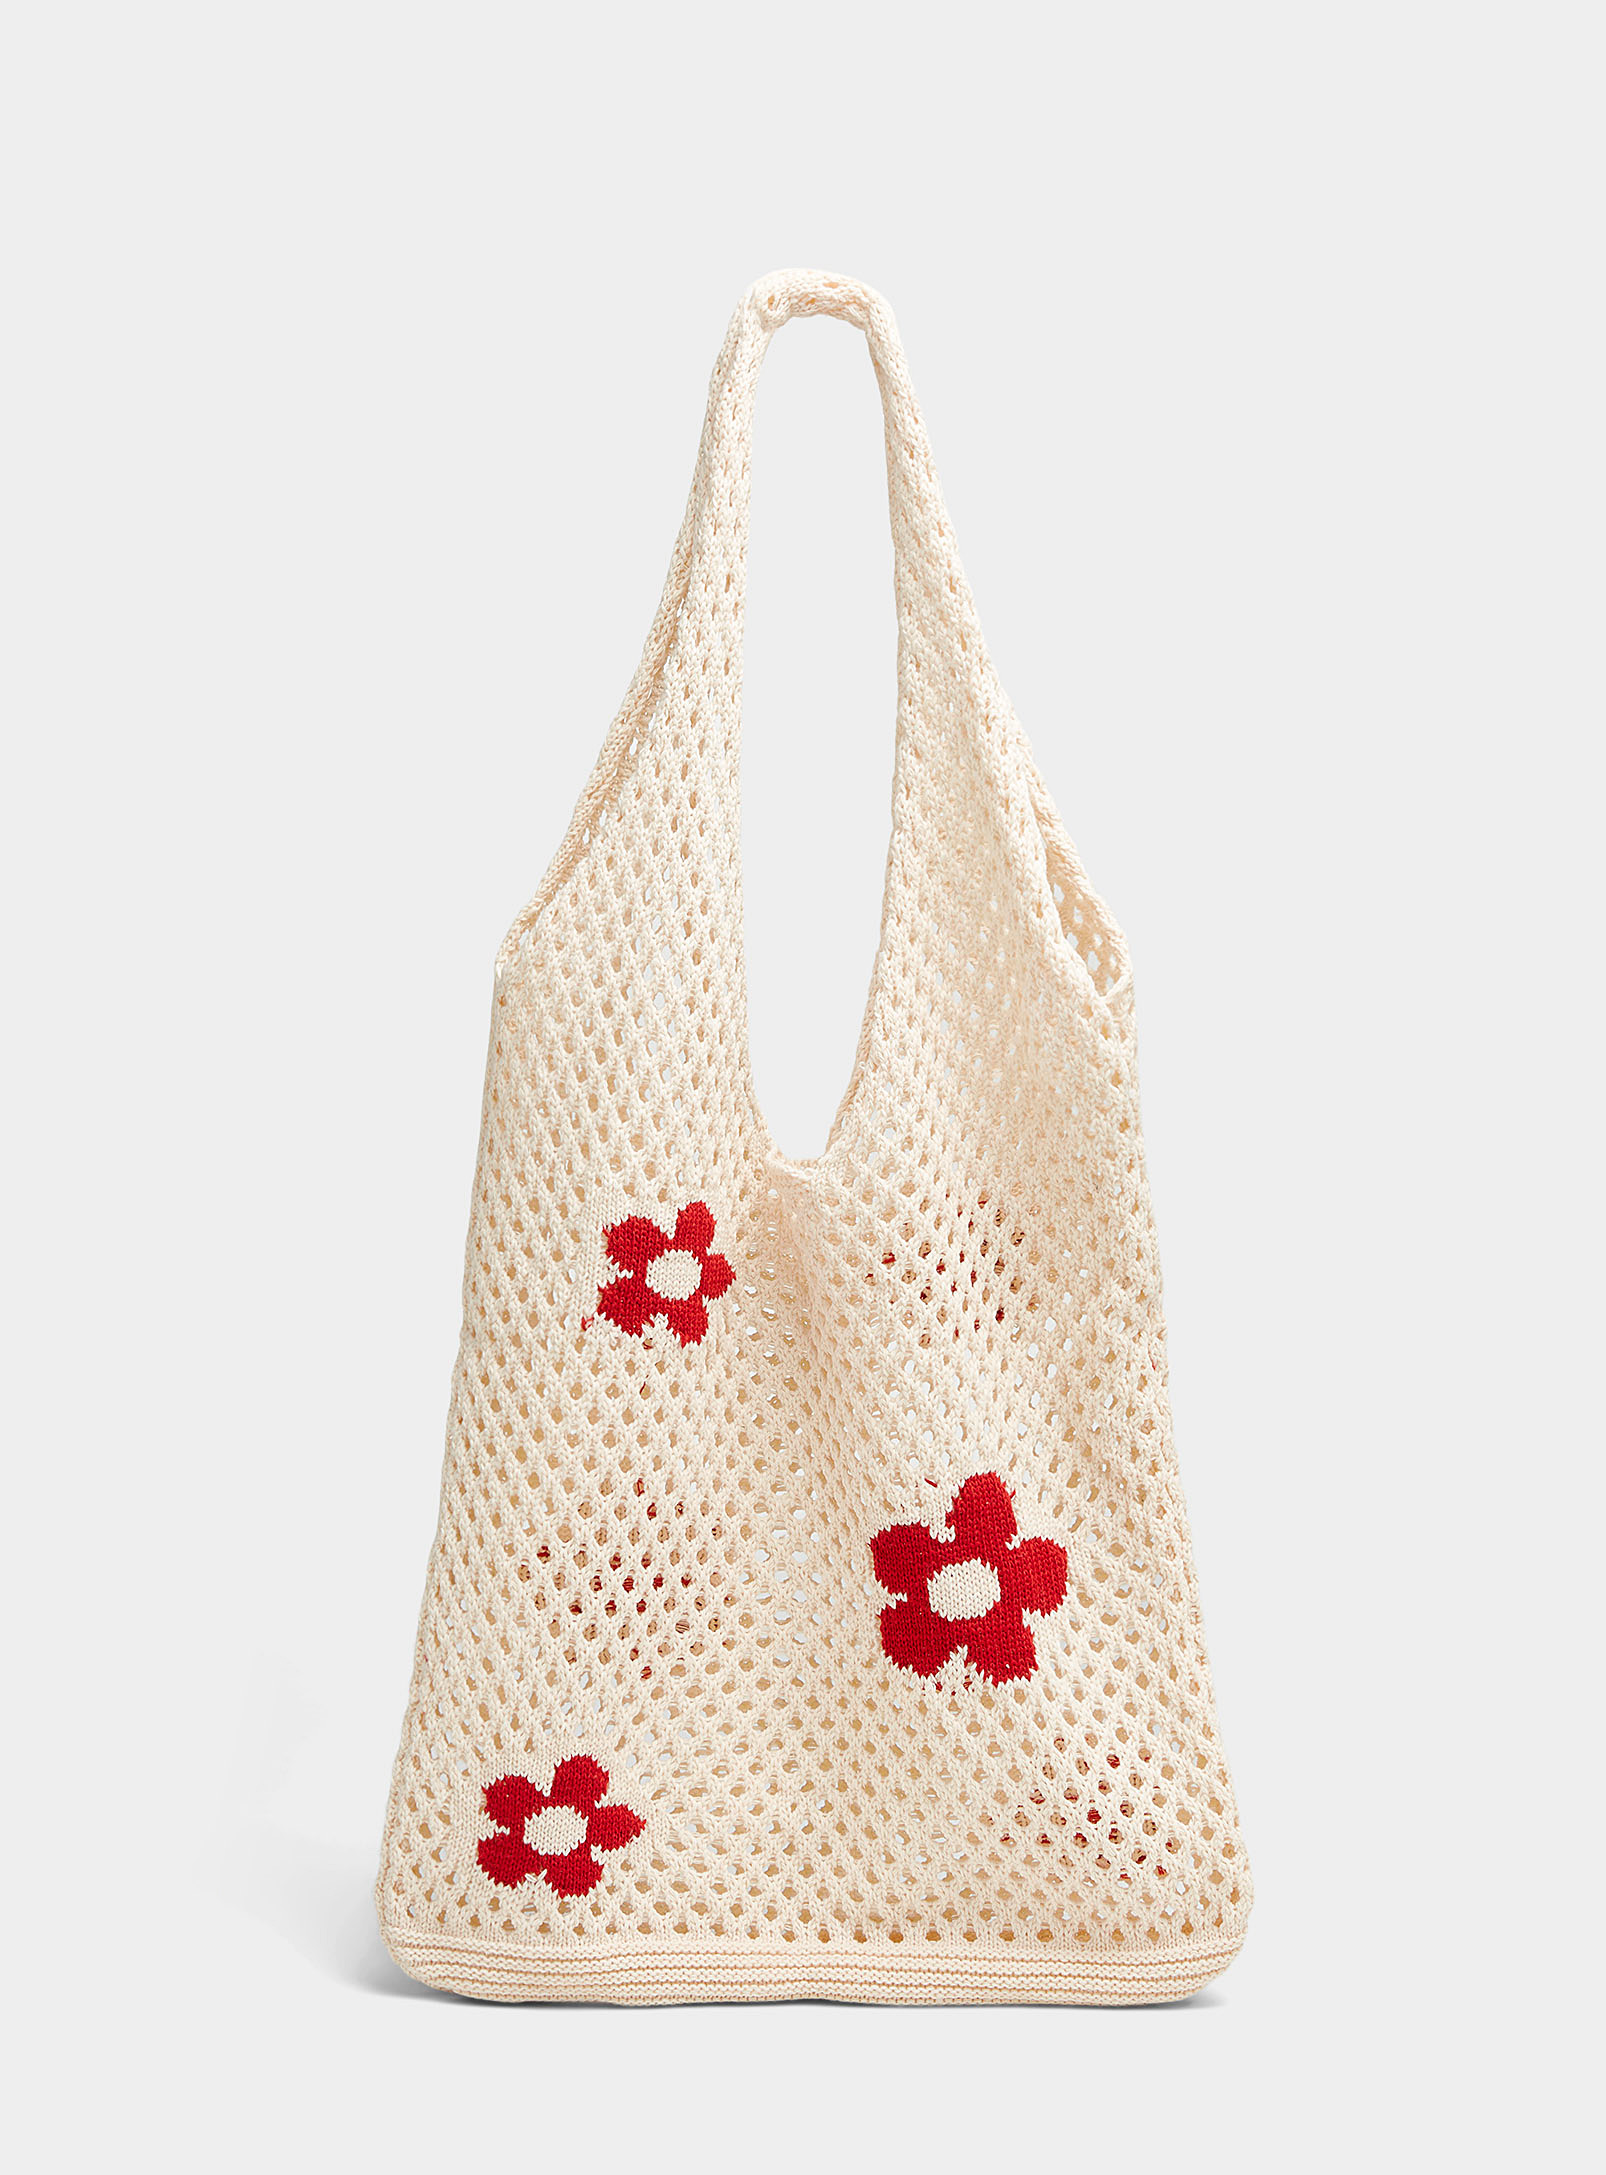 Simons - Women's Red flower crochet Tote Bag